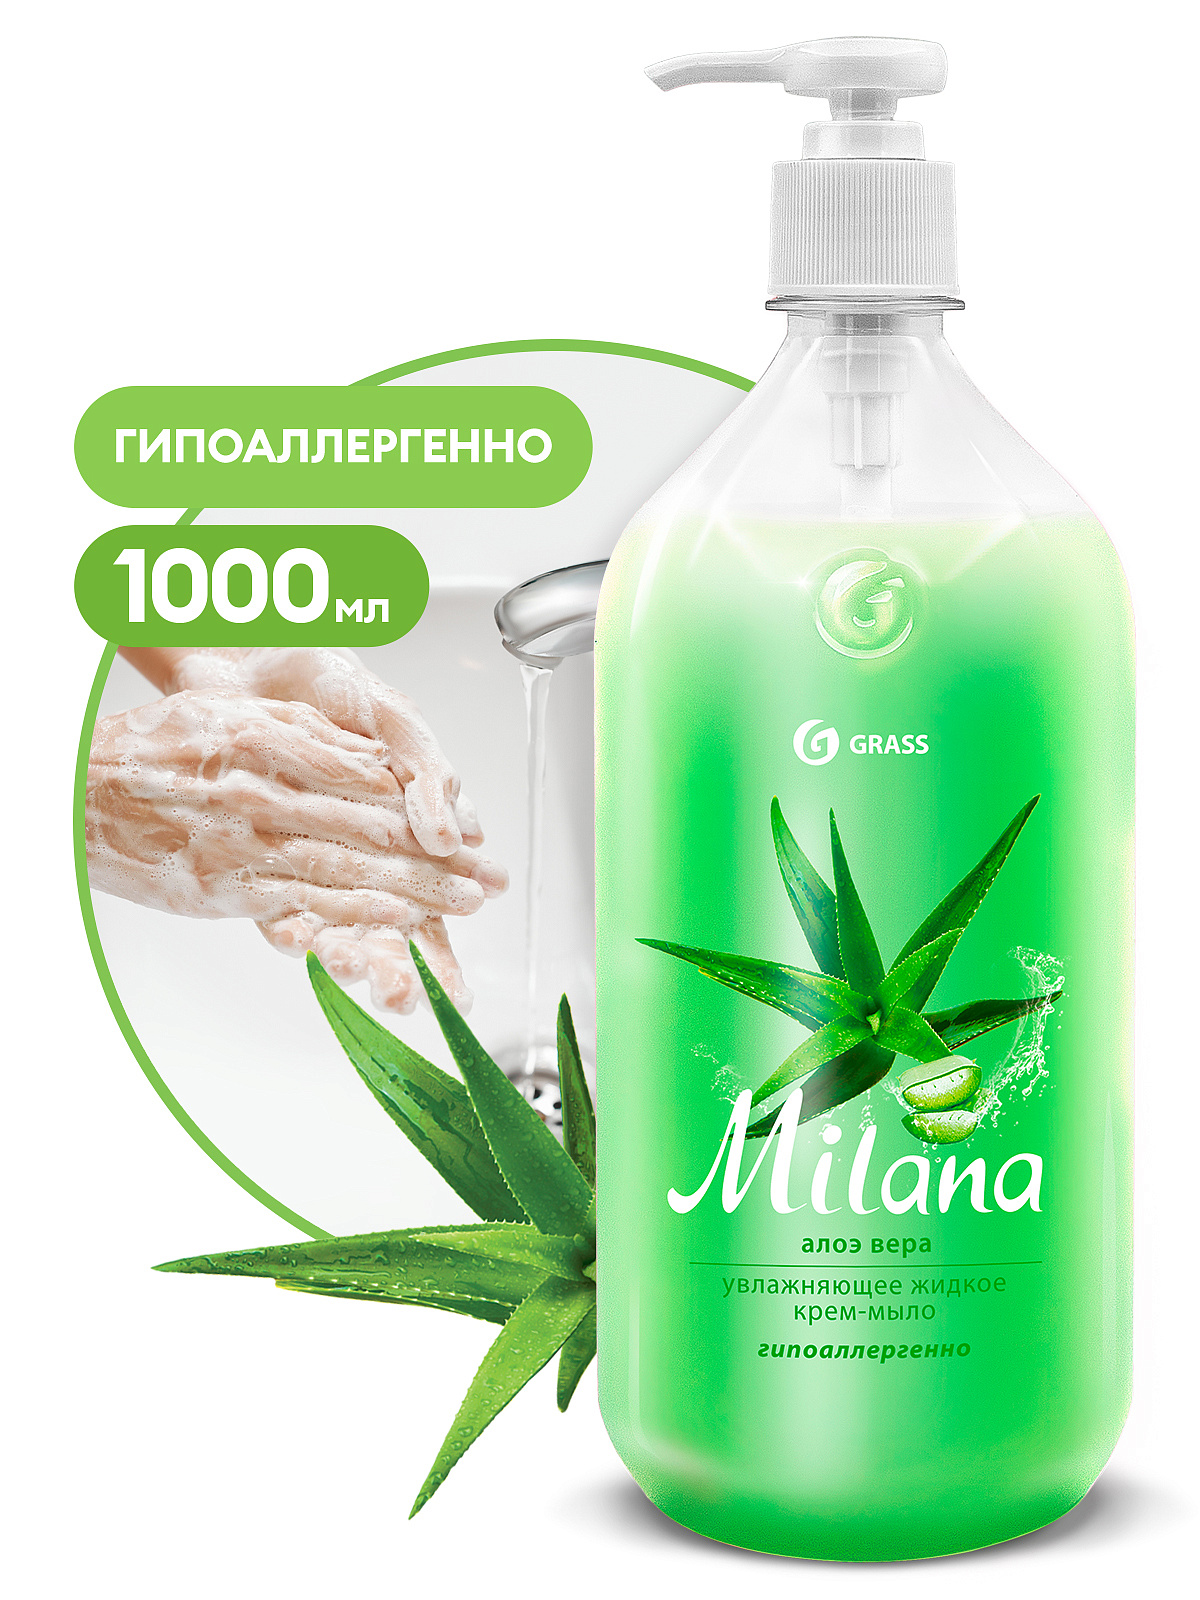 1 Жидкое крем-мыло "Milana" алоэ вера с дозатором (флакон 1000 мл)